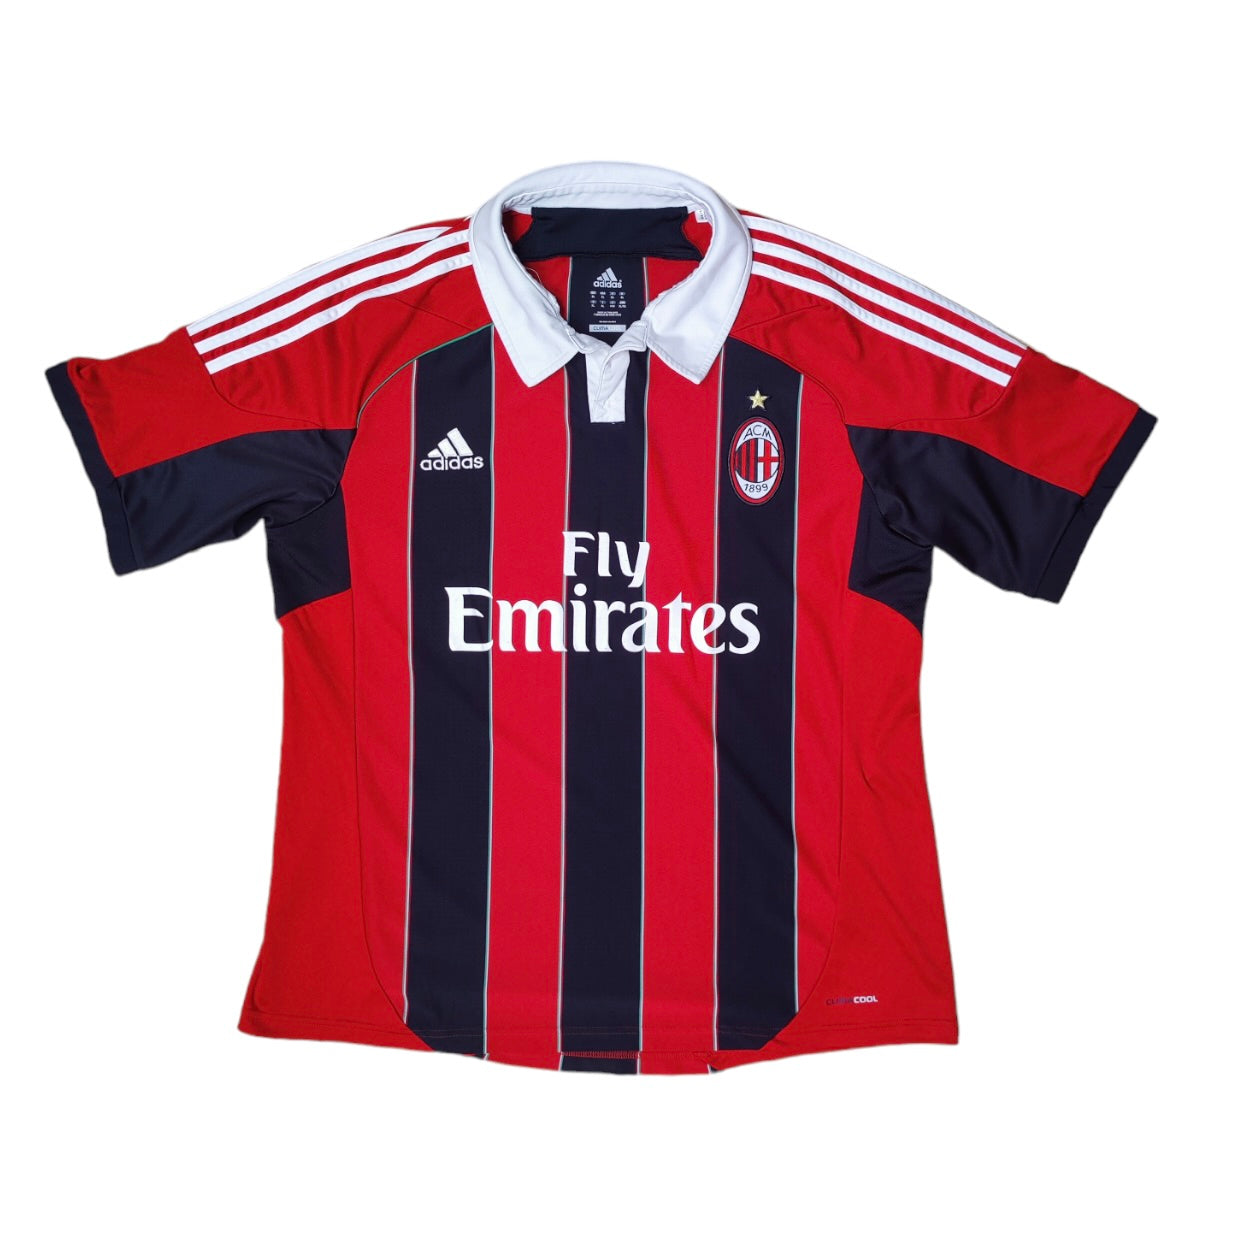 Adidas AC Milan 2012/2013 Home Football Jersey